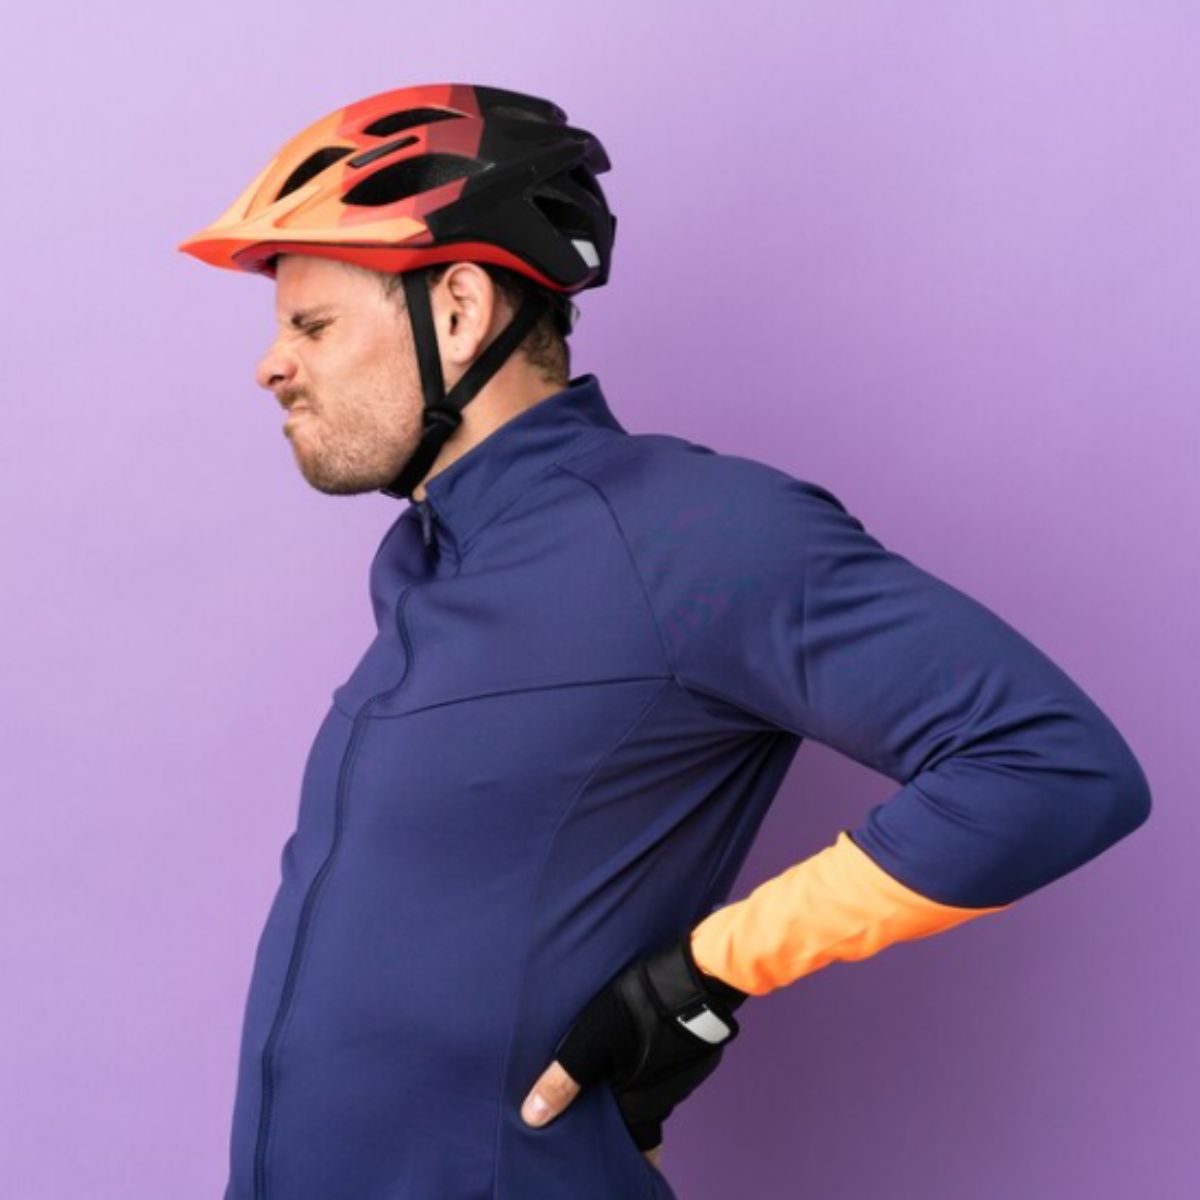 descubre-como-prevenir-y-aliviar-el-dolor-de-espalda-al-montar-en-bicicleta